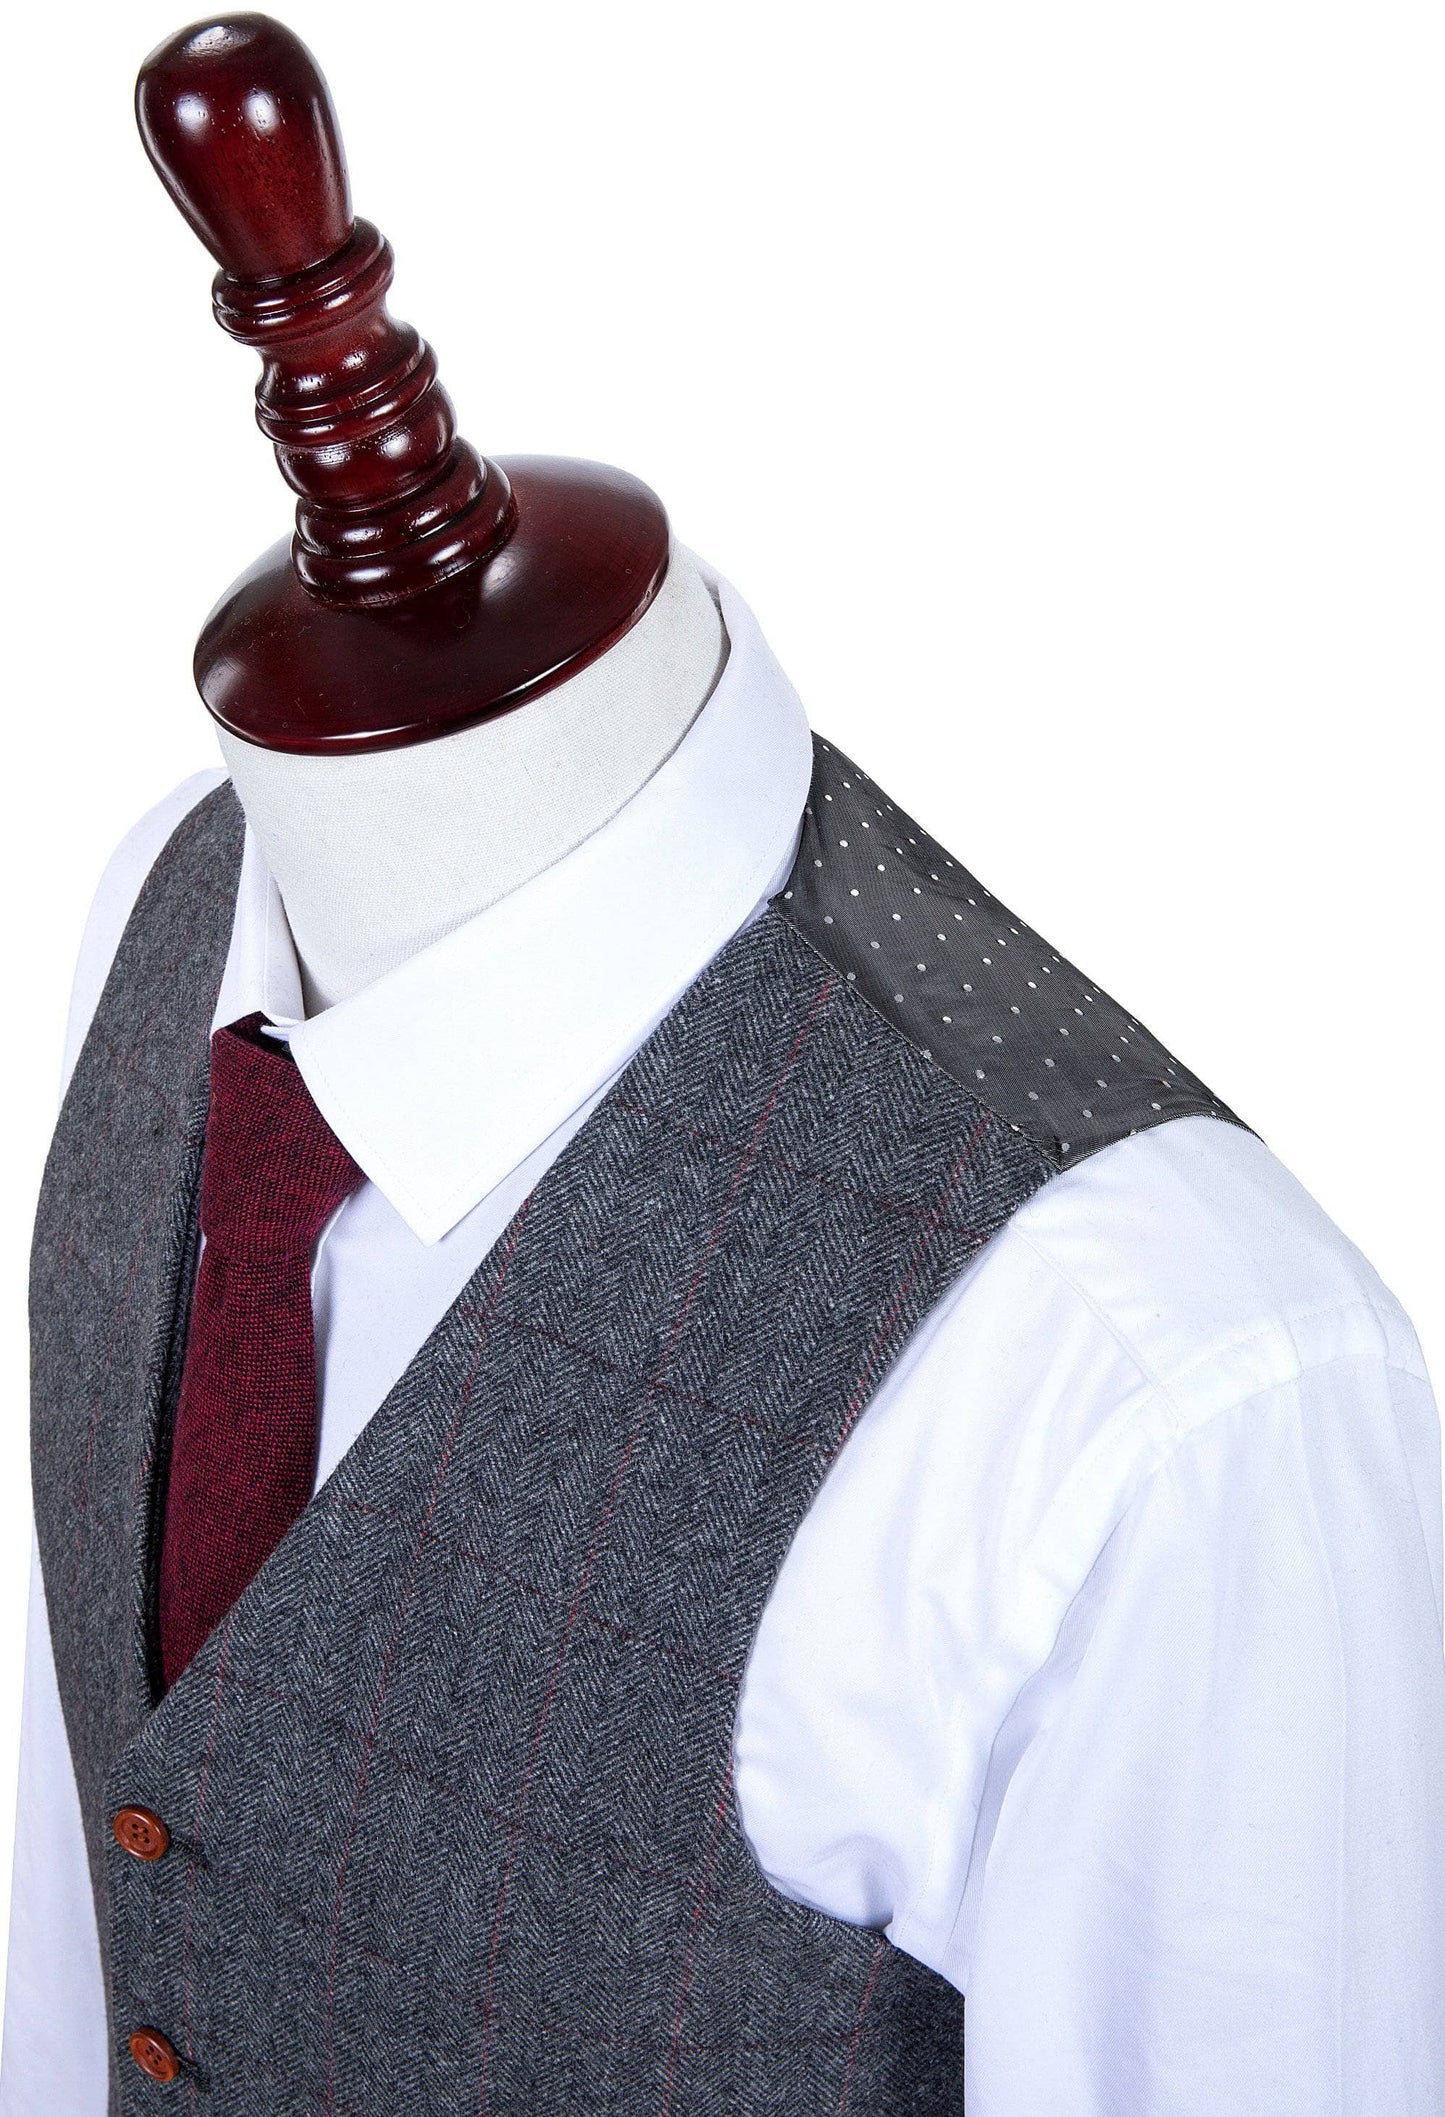 Traditional Grey Estate Herringbone Tweed Suit